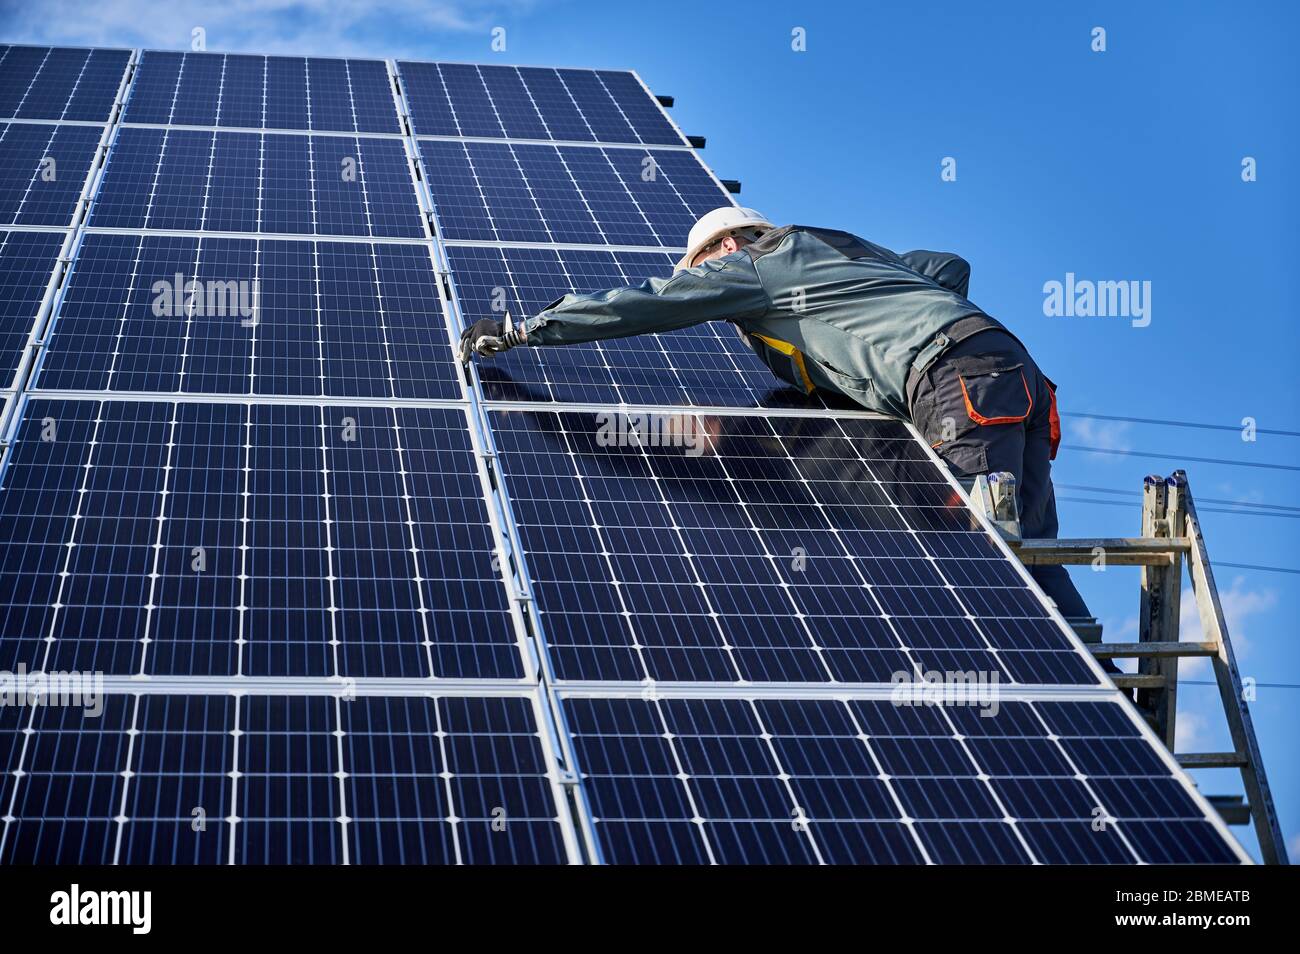 Electricista profesional parado en la escalera e instalando el sistema solar fotovoltaico del panel. Hombre técnico en casco de seguridad bajo el cielo azul. Concepto de energía y energía alternativas Foto de stock